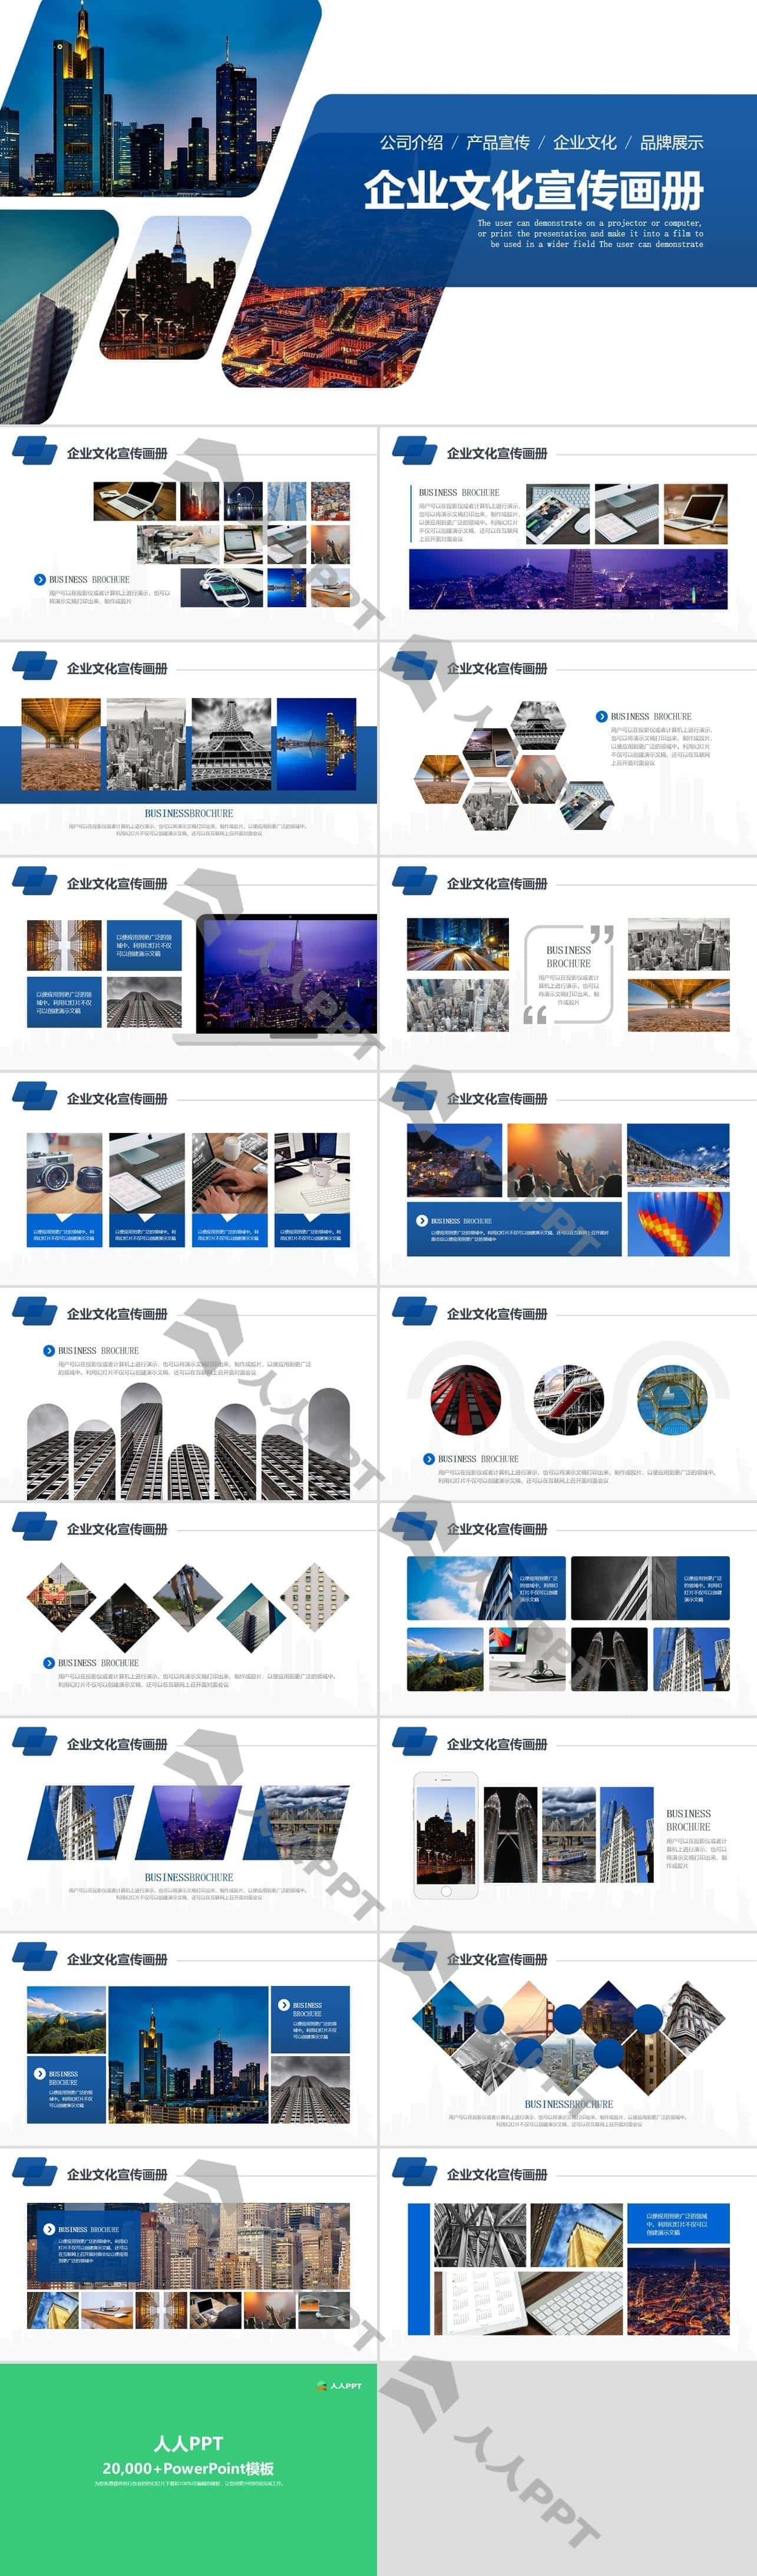 多种图片排版方案企业文化宣传画册PPT模板长图